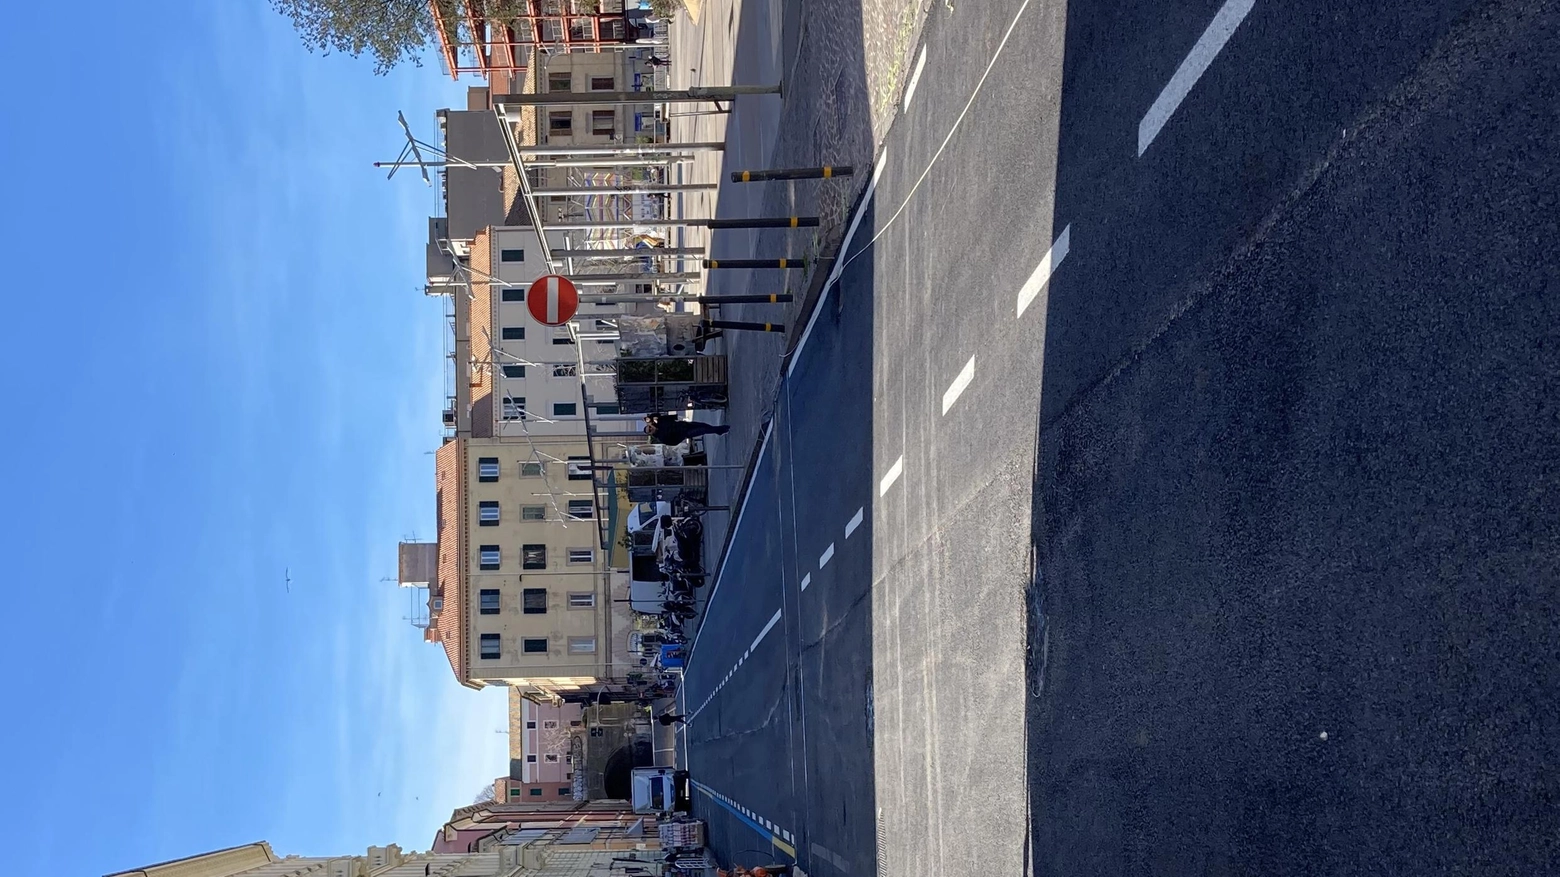 Nuovi asfalti in centro  Via San Martino cambia pelle  Riaperta subito al traffico